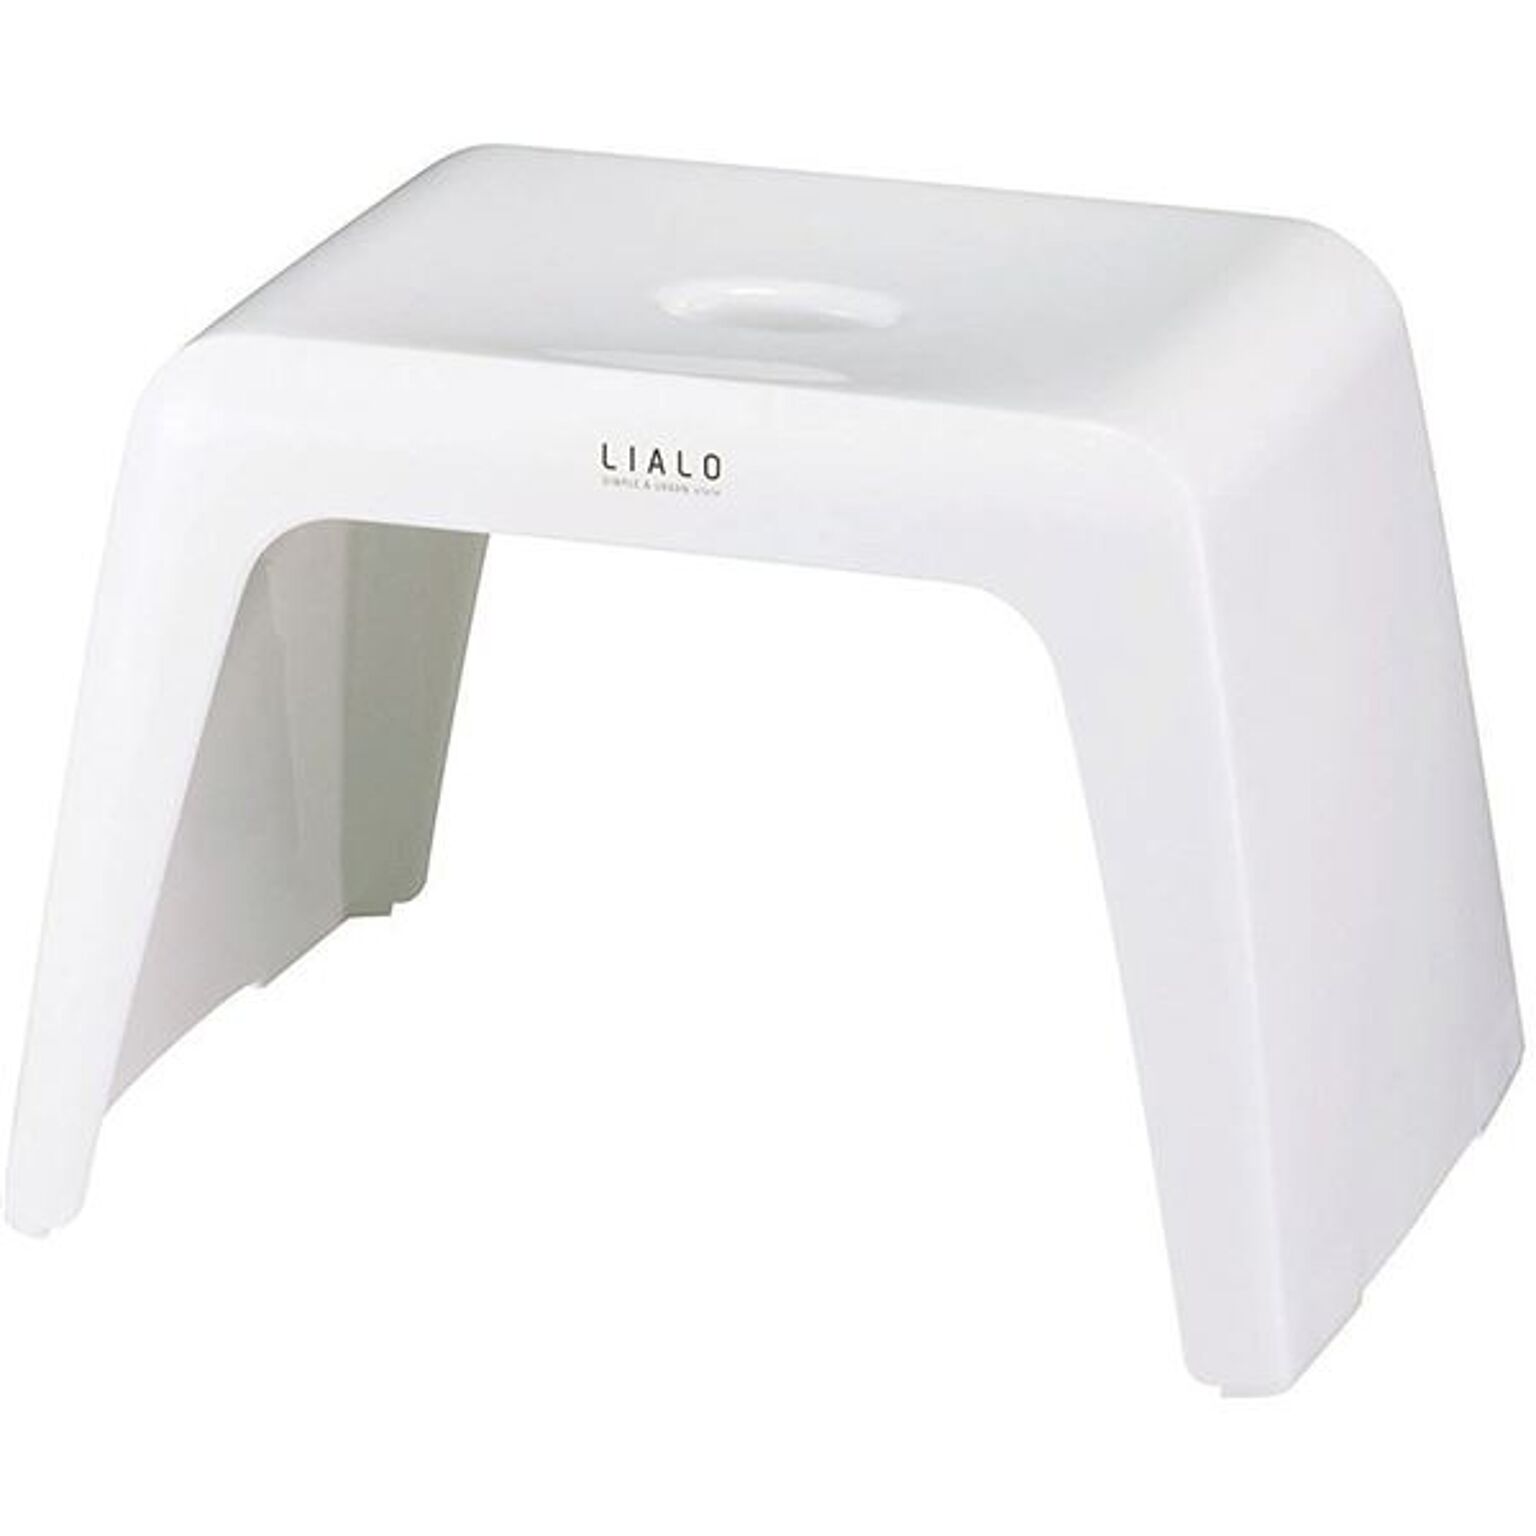 バスチェア 風呂椅子 座面高約25cm 約幅37.6cm ホワイト 通気性抜群 抗菌効果 LIALO リアロ 浴室 風呂 バスルーム